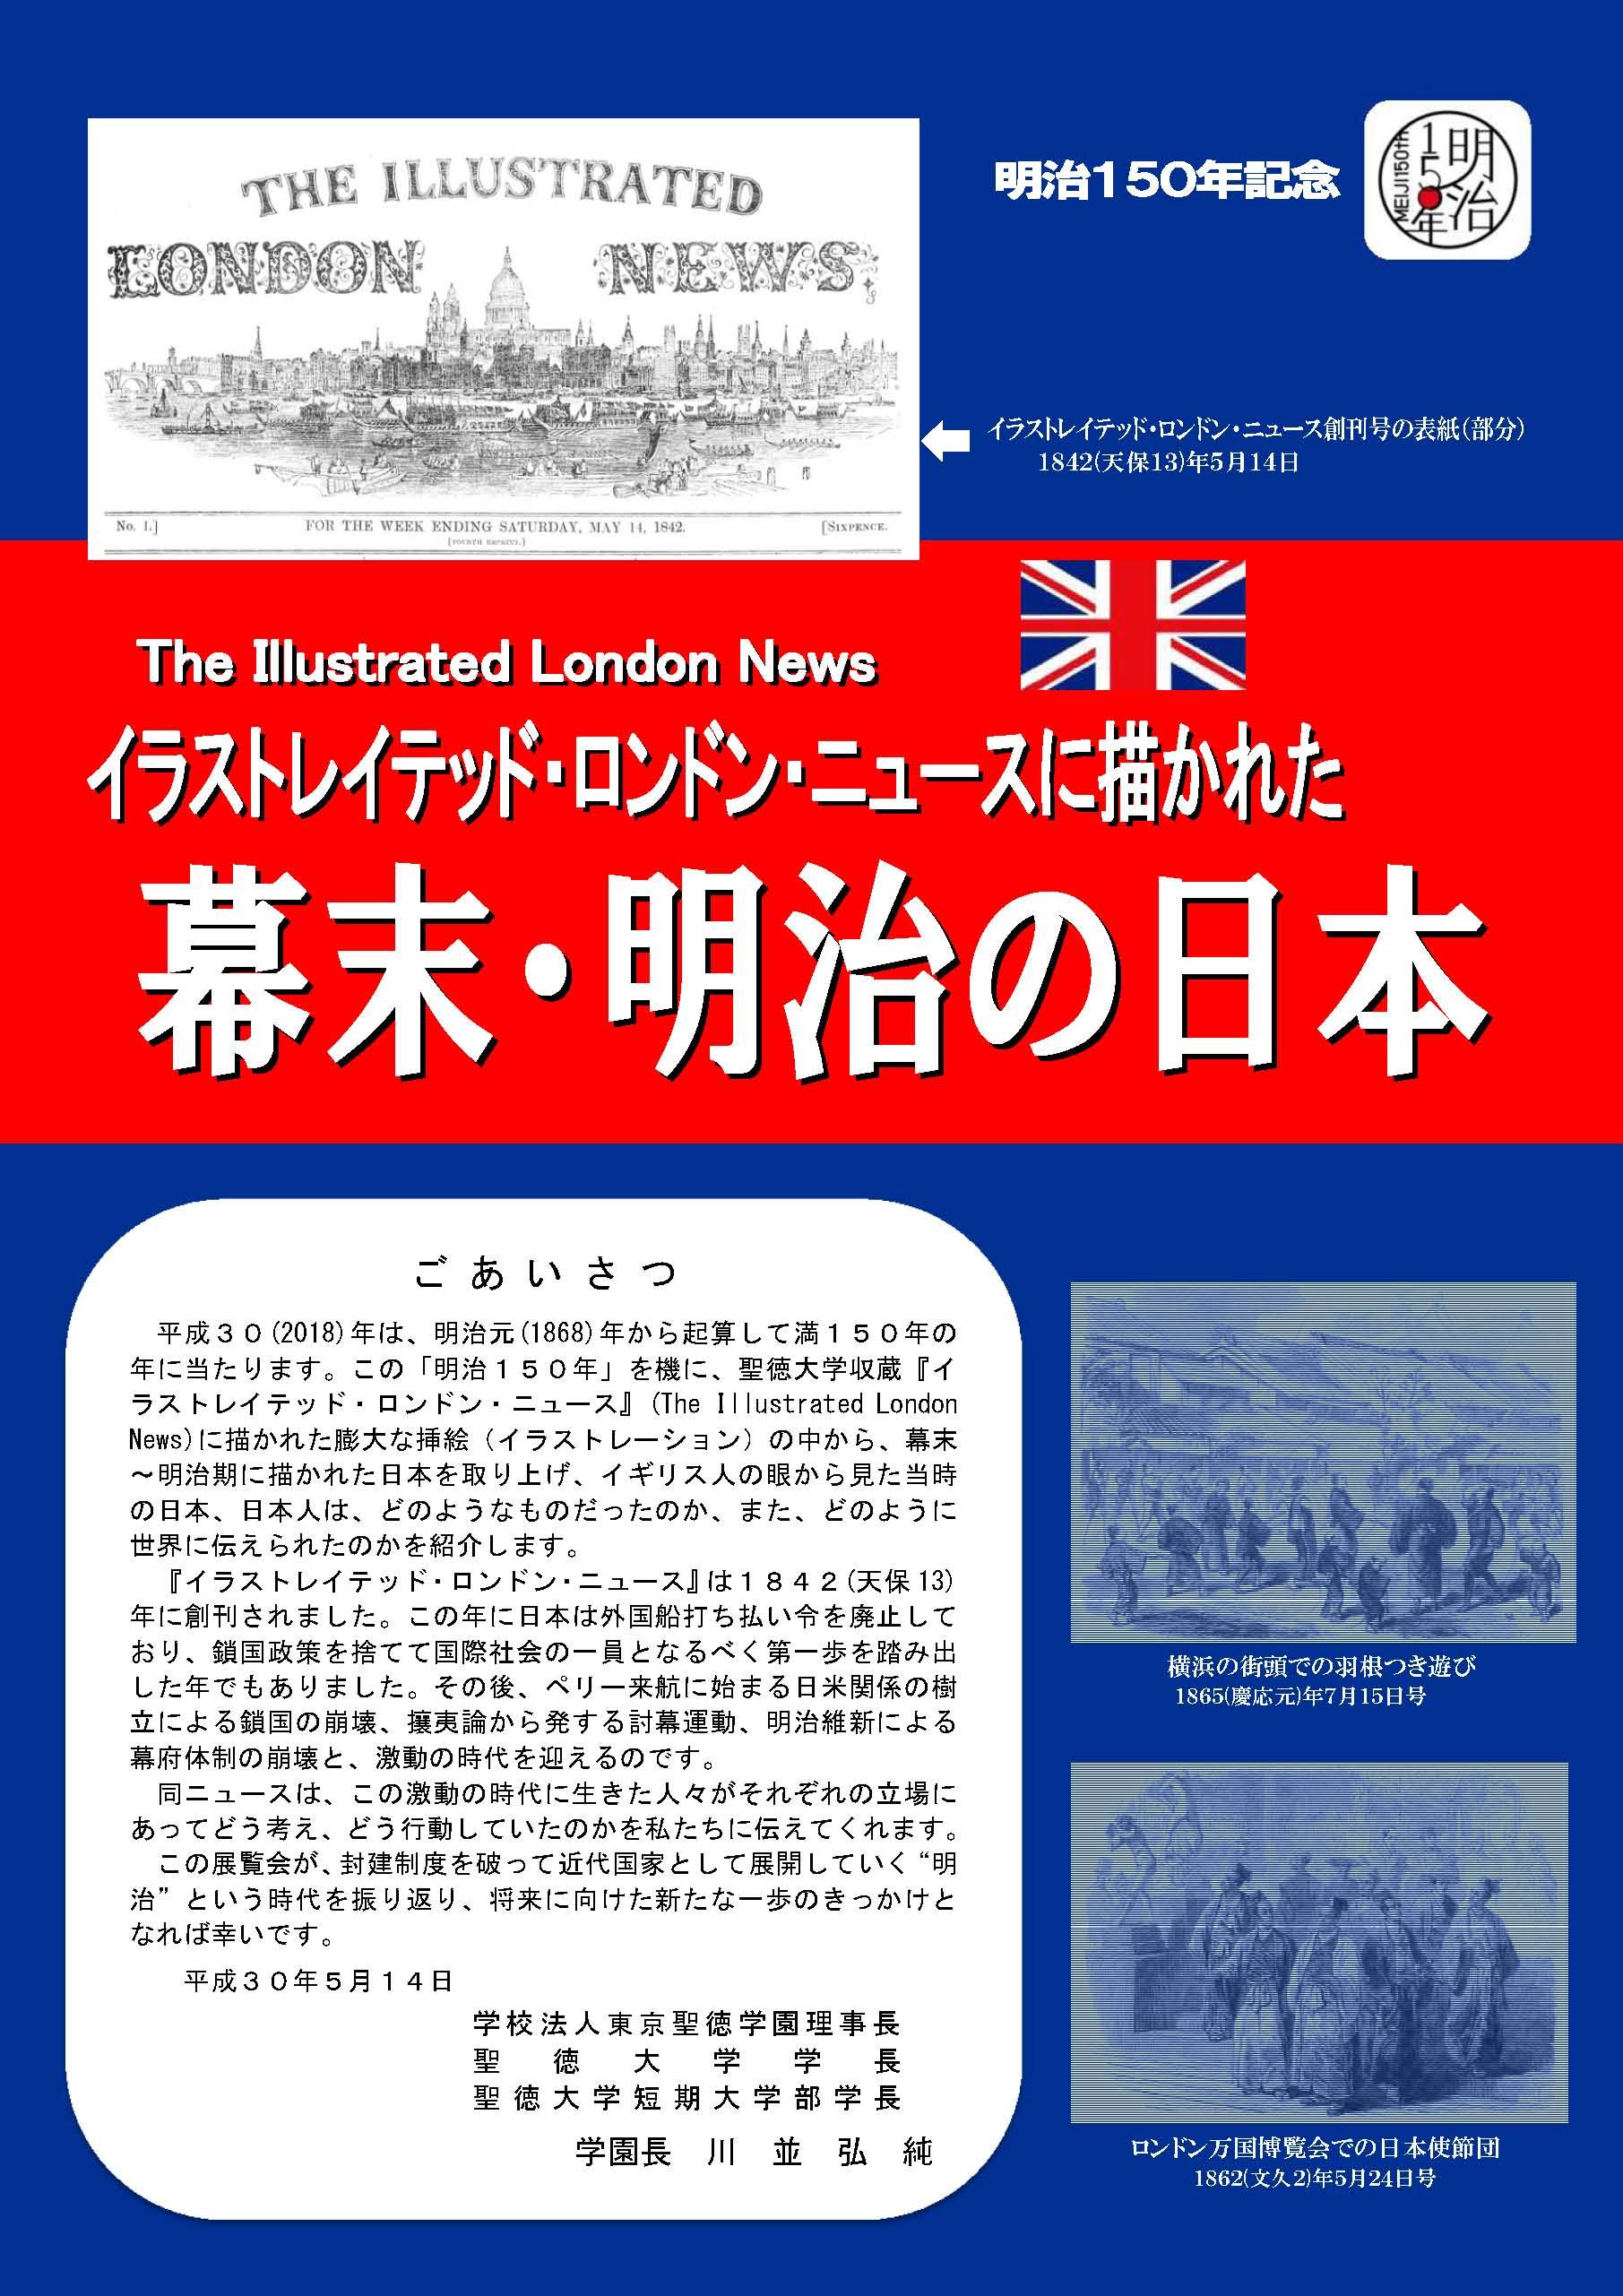 プレスリリース 聖徳大学が明治150年記念 イラストレイテッド ロンドン ニュースに描かれた幕末 明治の日本 展を開催中 イギリス人の眼から見た幕末 明治期の日本を紹介 Digital Pr Platform 毎日新聞